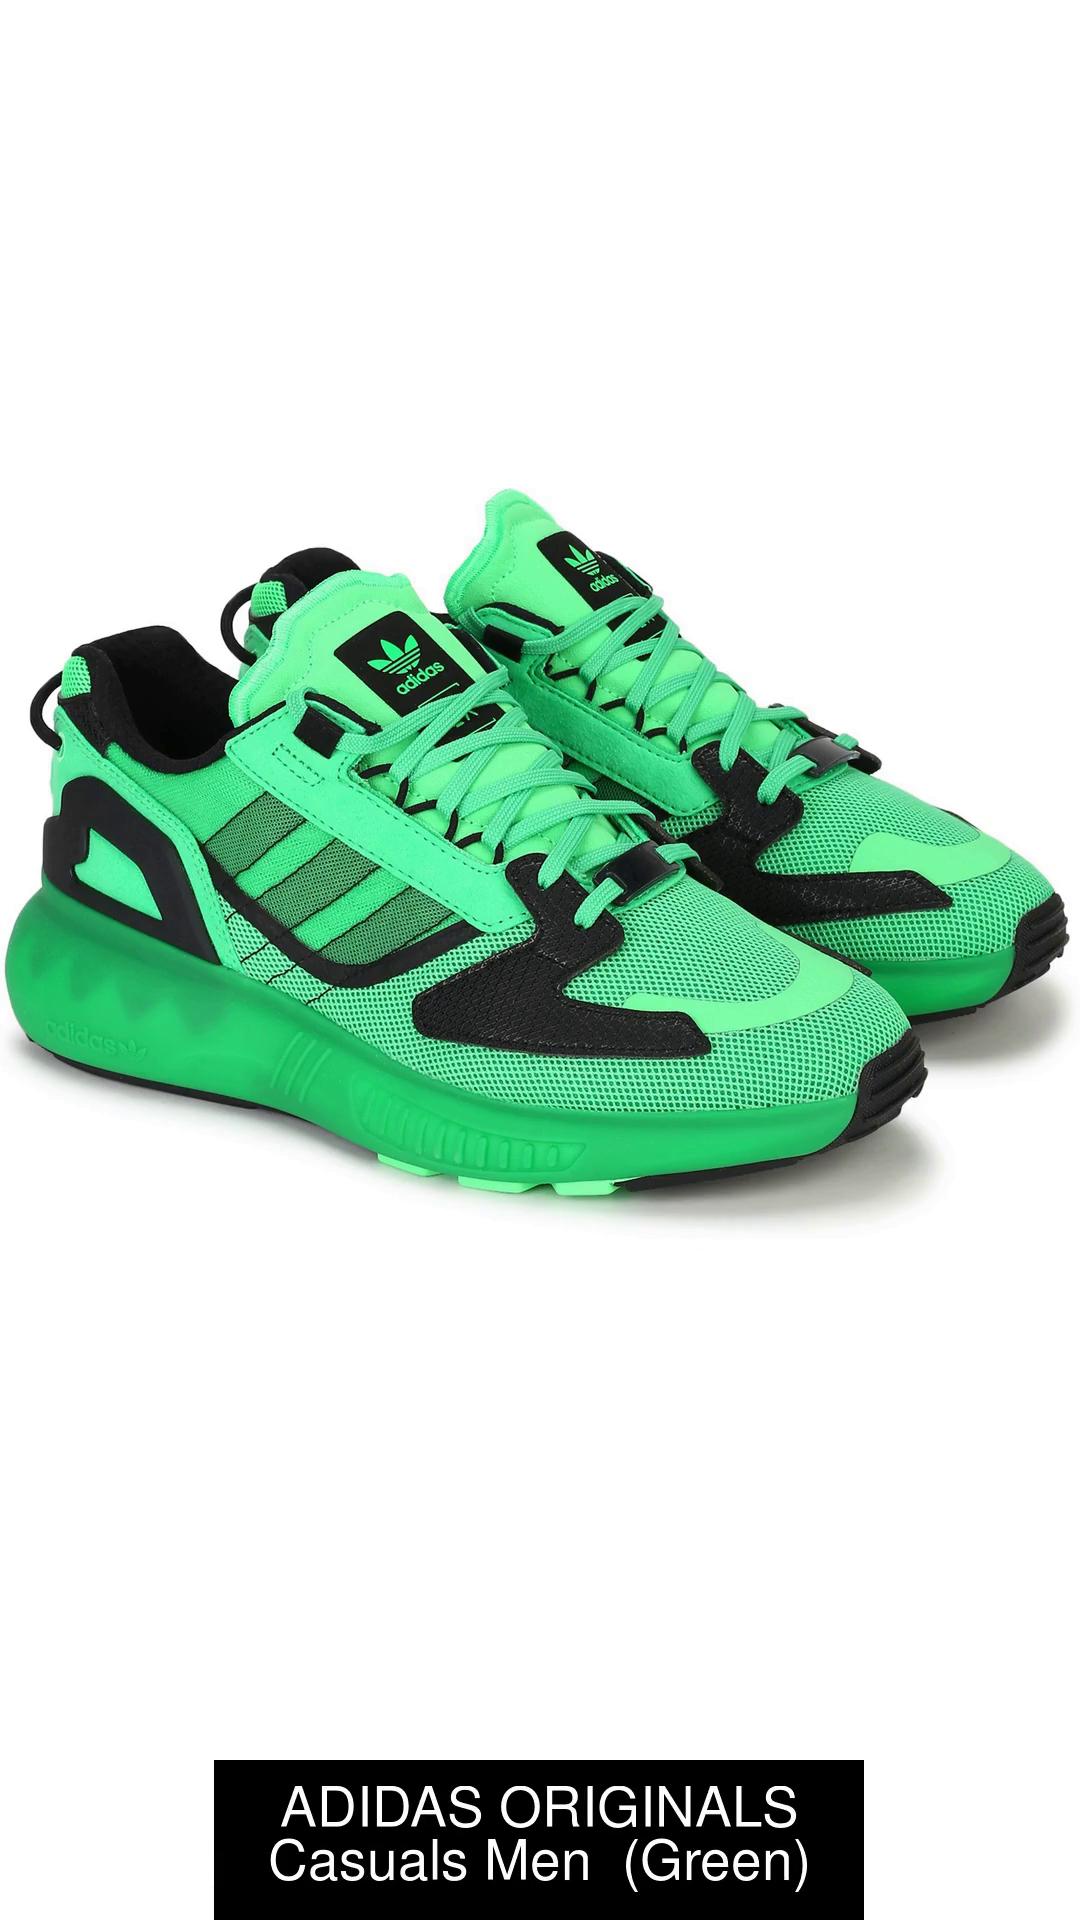 Men's shoes adidas ZX 5000 RSPN Black1/Electr/Carbon